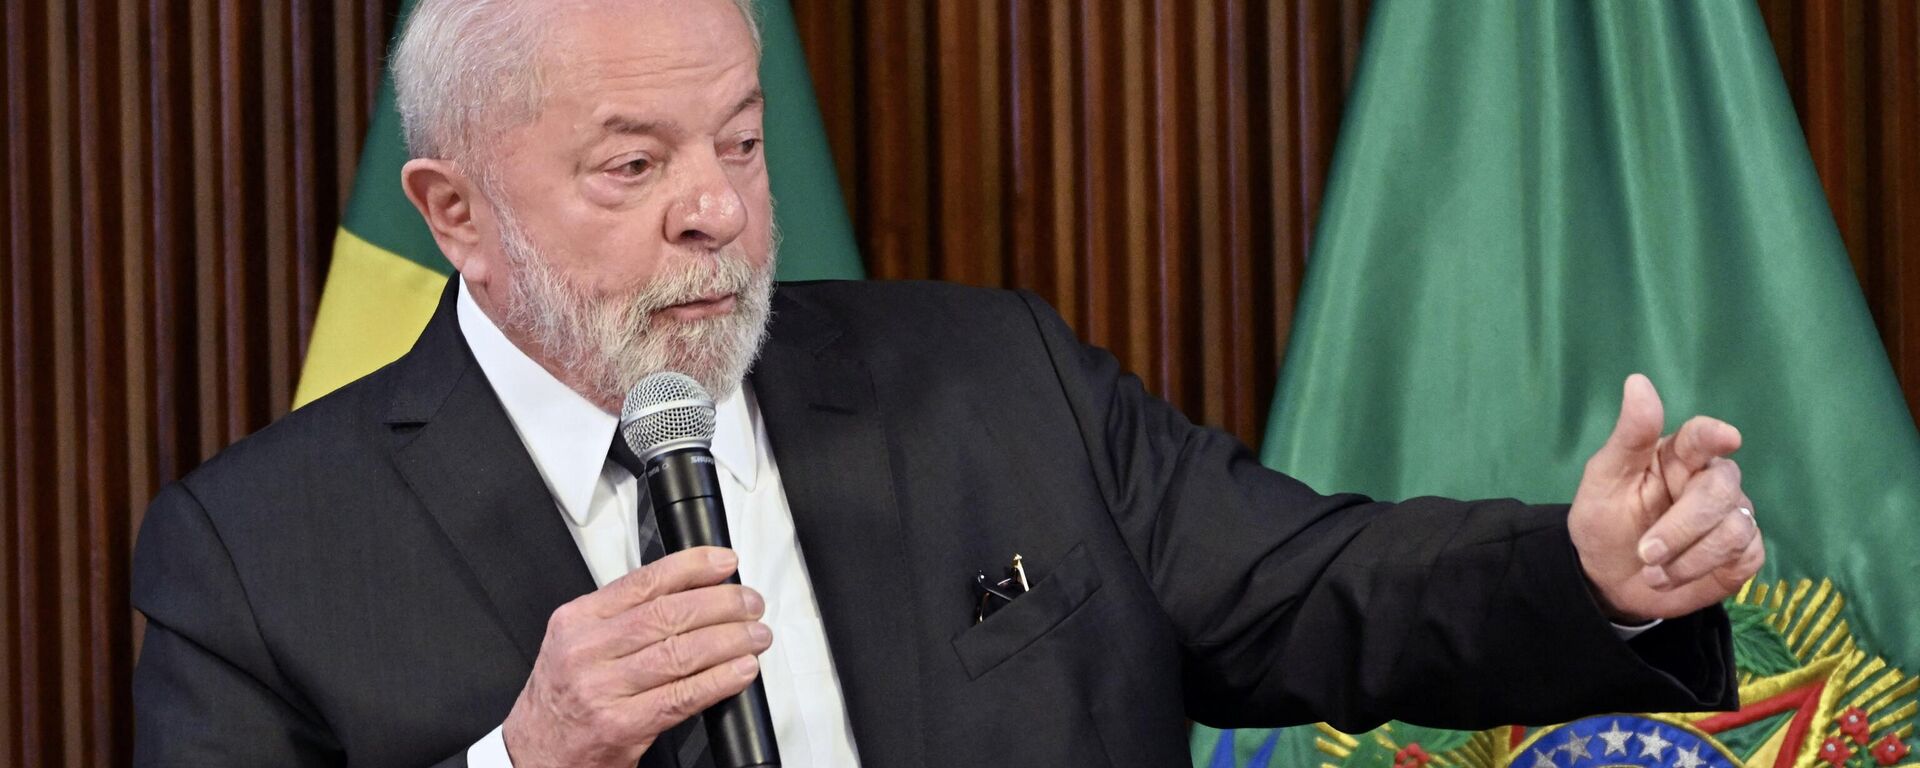 O presidente brasileiro Luiz Inácio Lula da Silva discursa durante reunião ministerial no Palácio do Planalto, em Brasília, em 15 de junho de 2023 - Sputnik Brasil, 1920, 22.06.2023